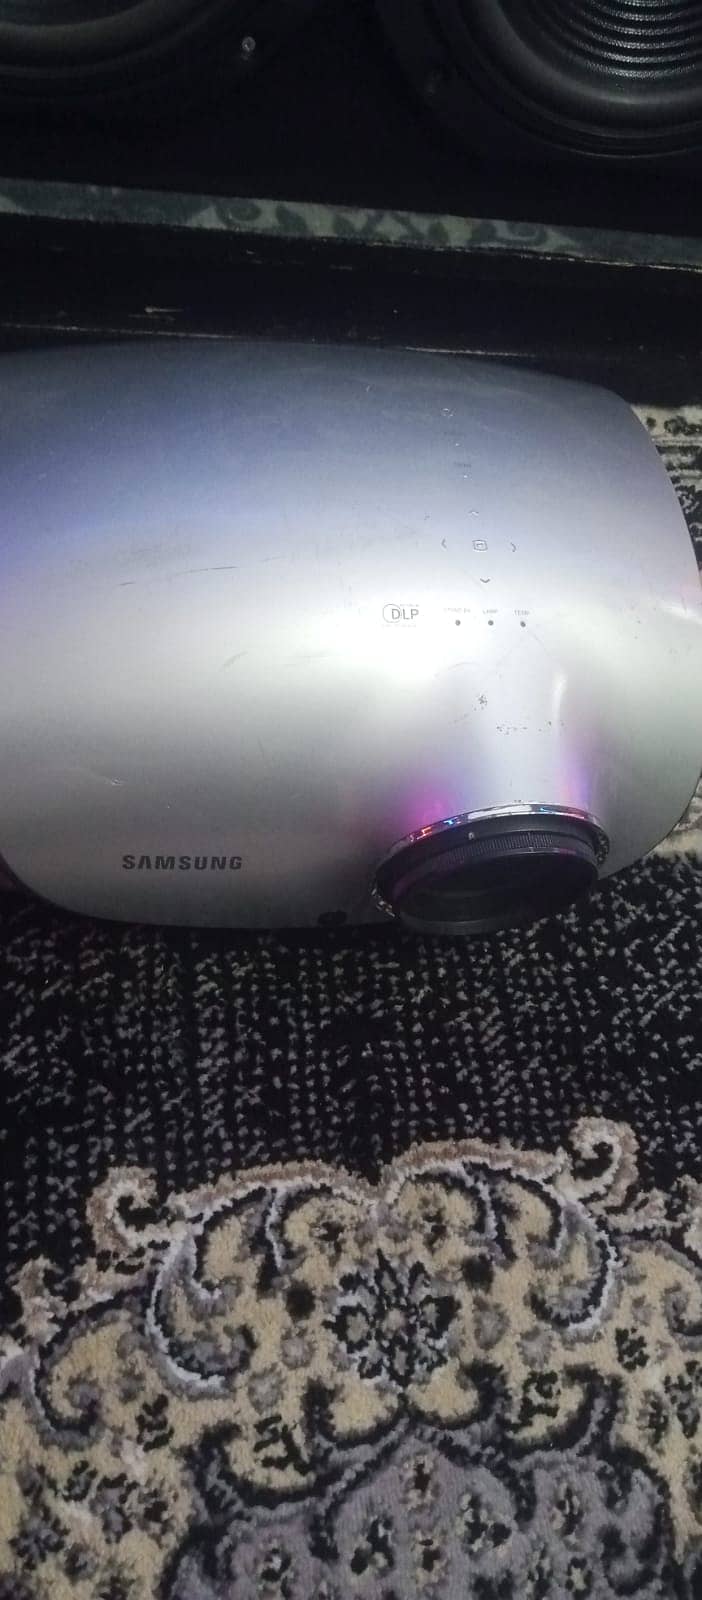 Samsung SP-D400 Projector | XGA Conference Room Projector 3